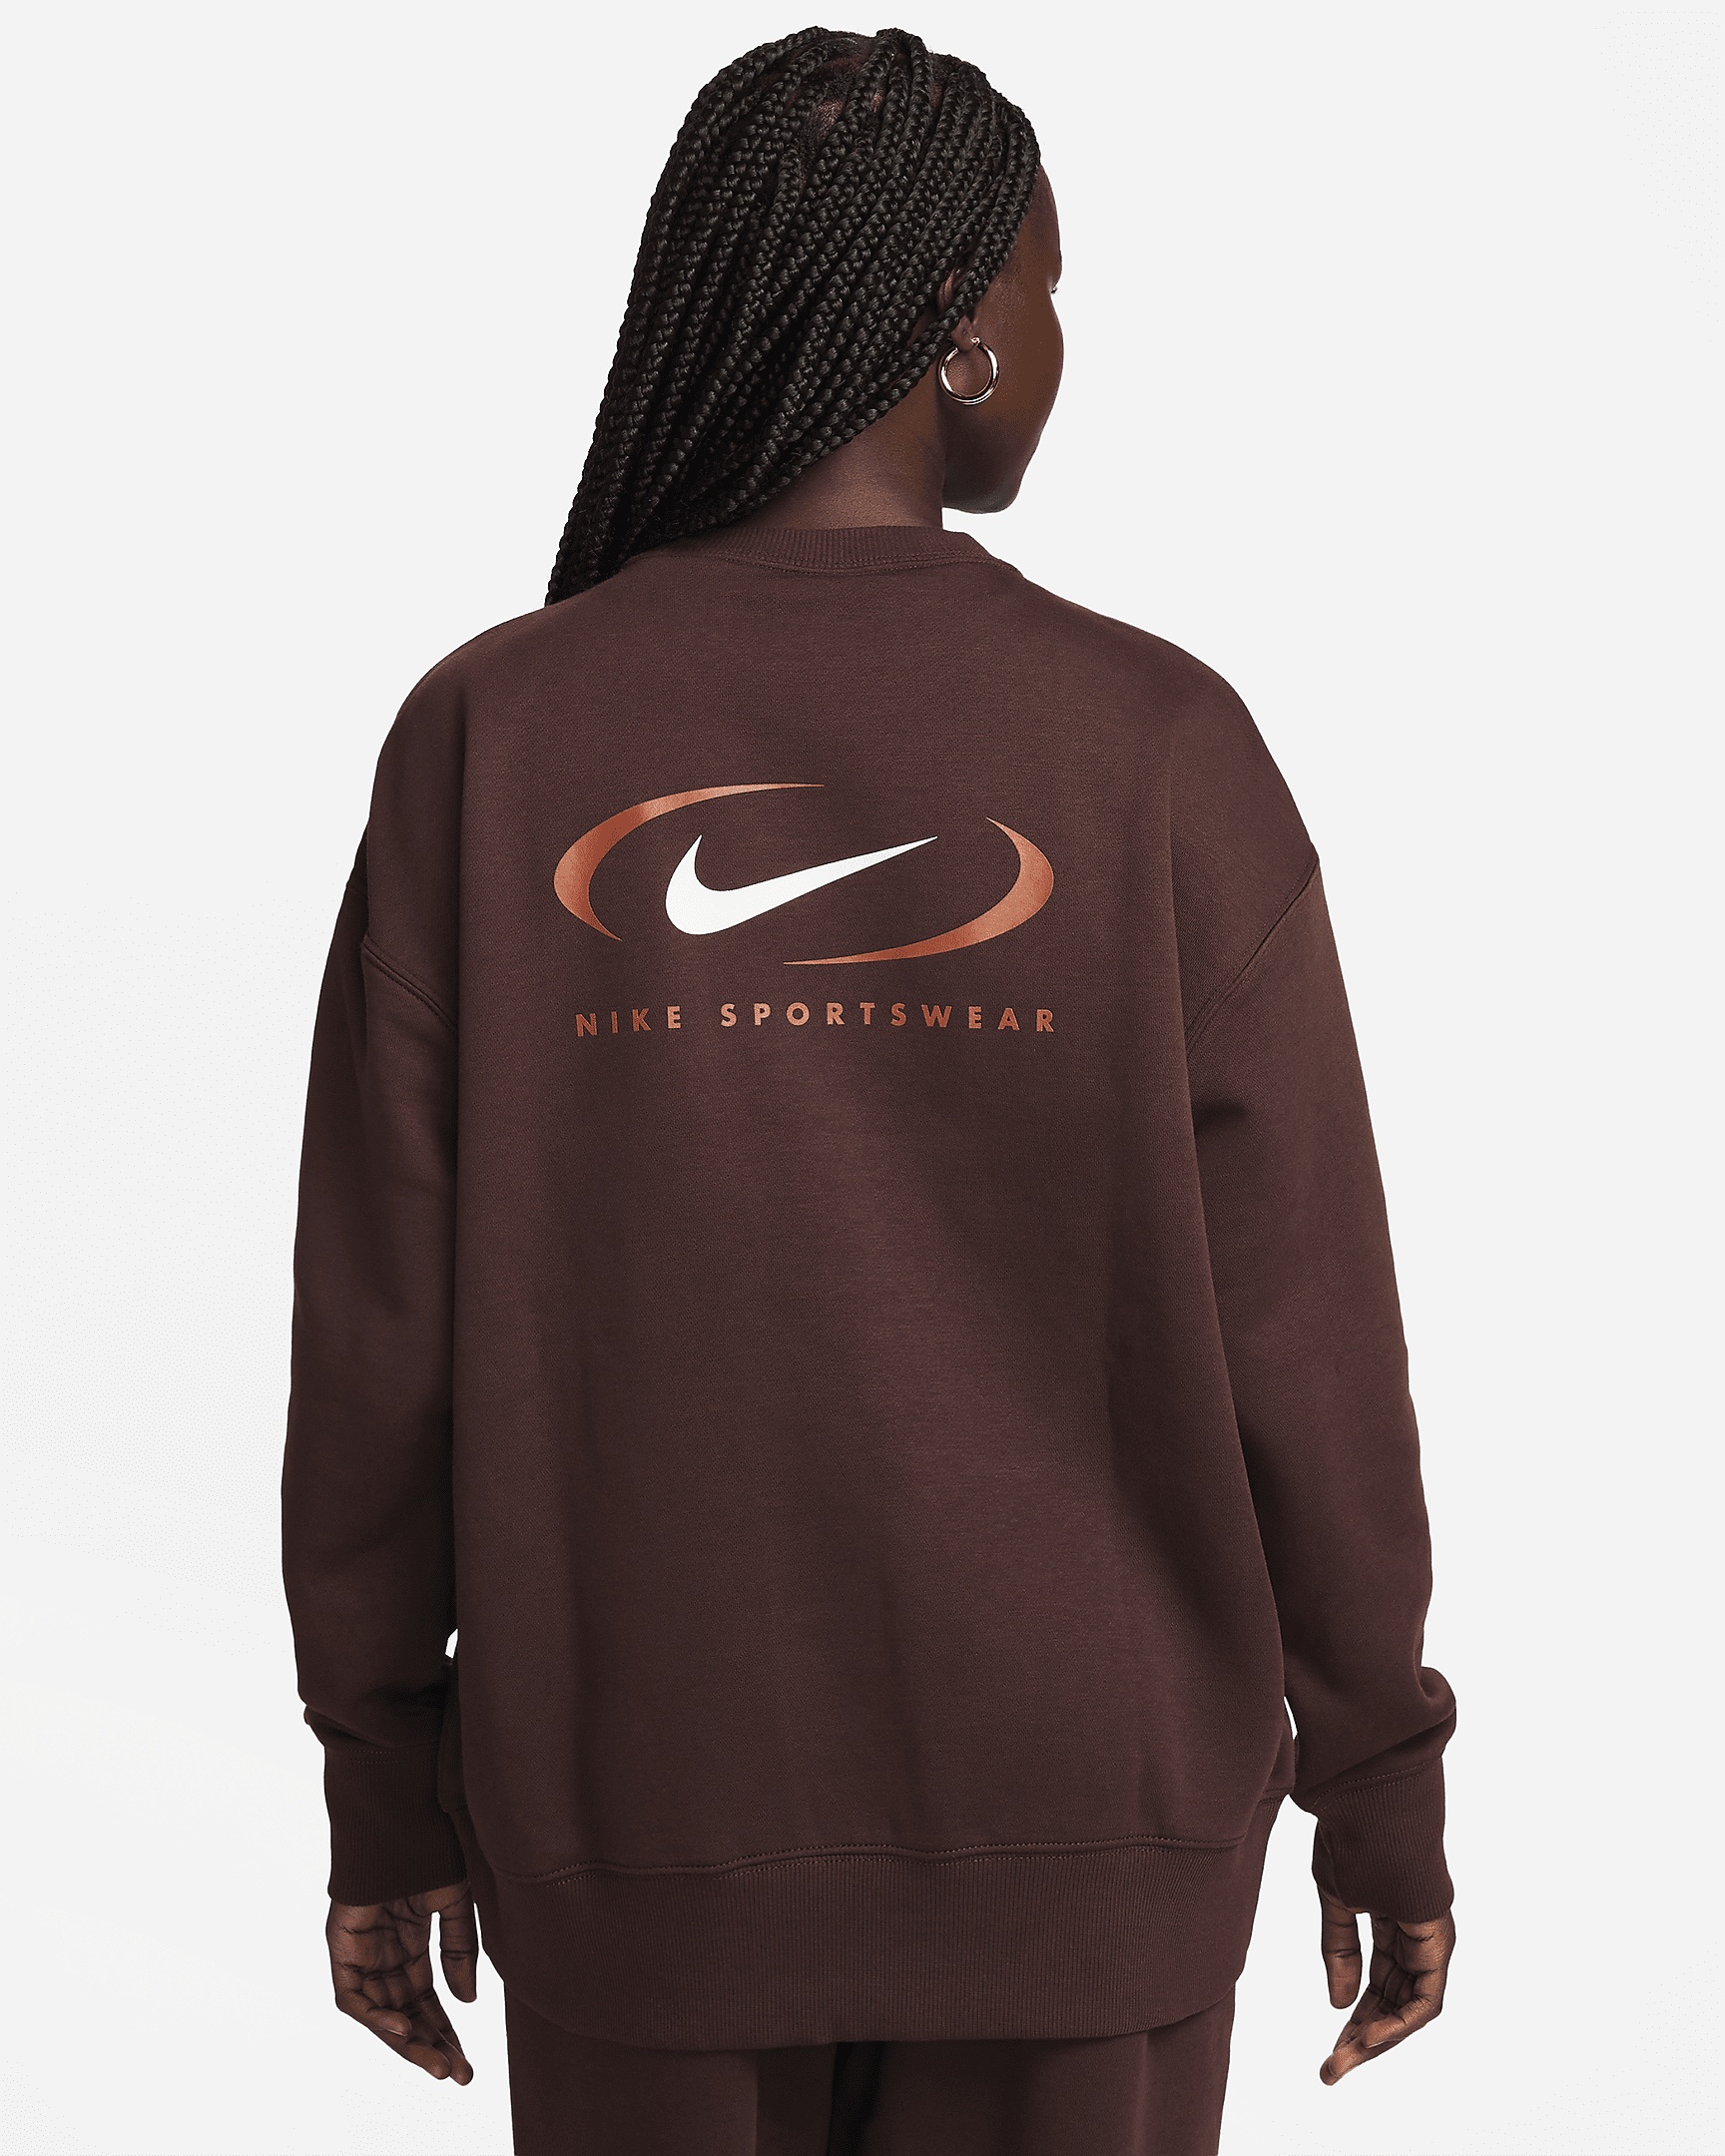 Women's Nike Sportswear Phoenix Fleece Oversized Crew-Neck Sweatshirt - 2